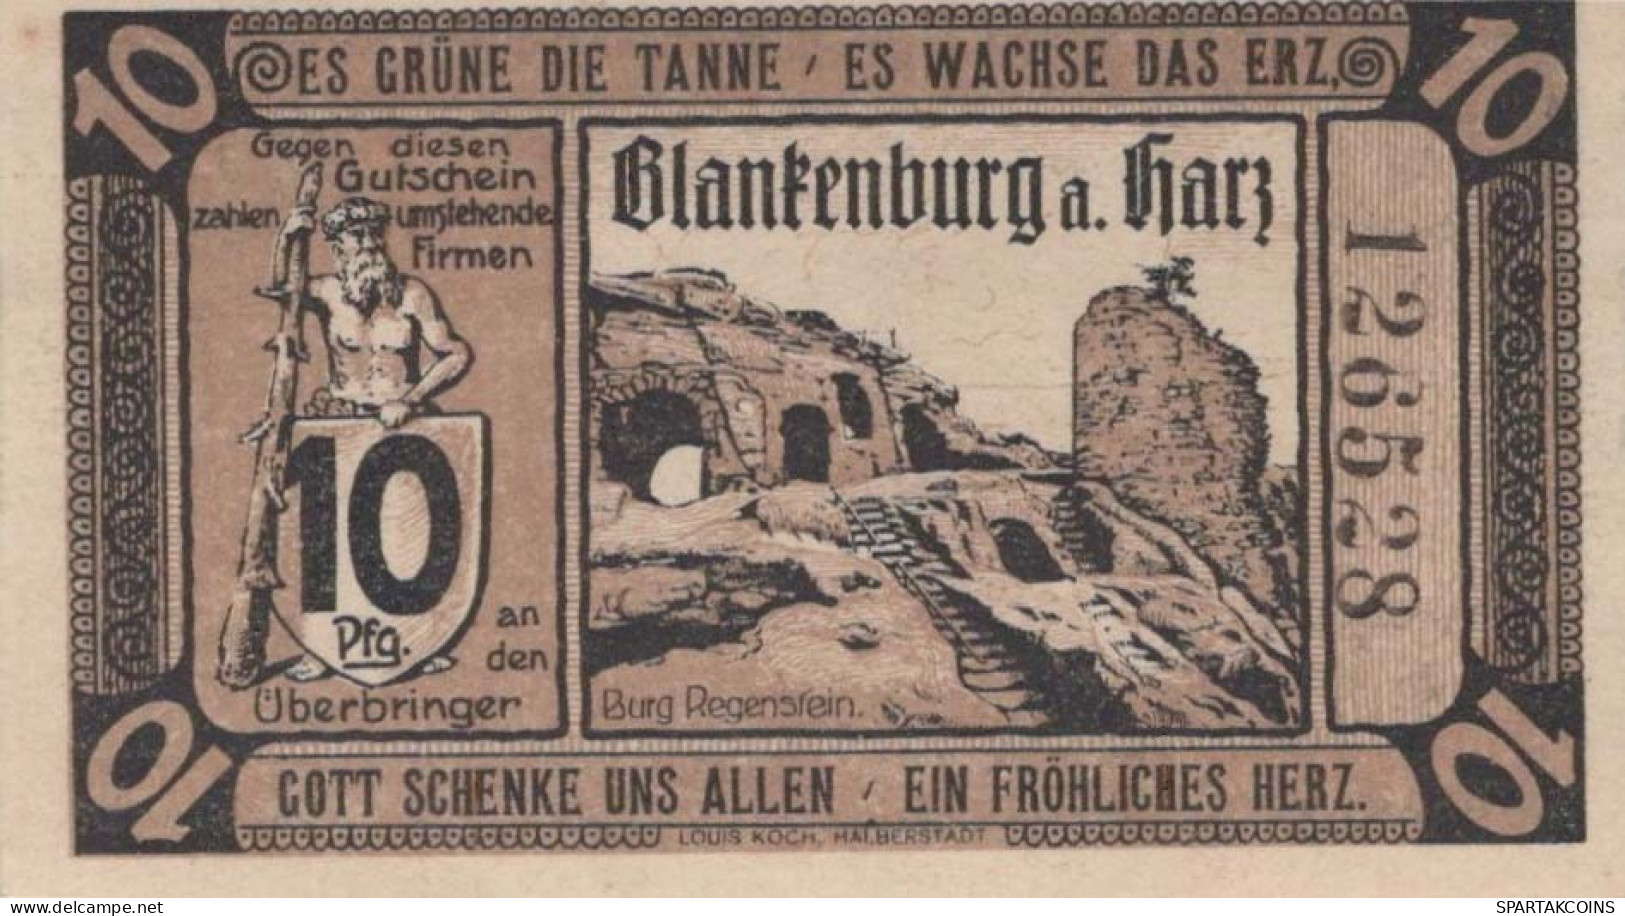 10 PFENNIG 1920 Stadt BAD BLANKENBURG Thuringia UNC DEUTSCHLAND Notgeld #PA239 - [11] Local Banknote Issues